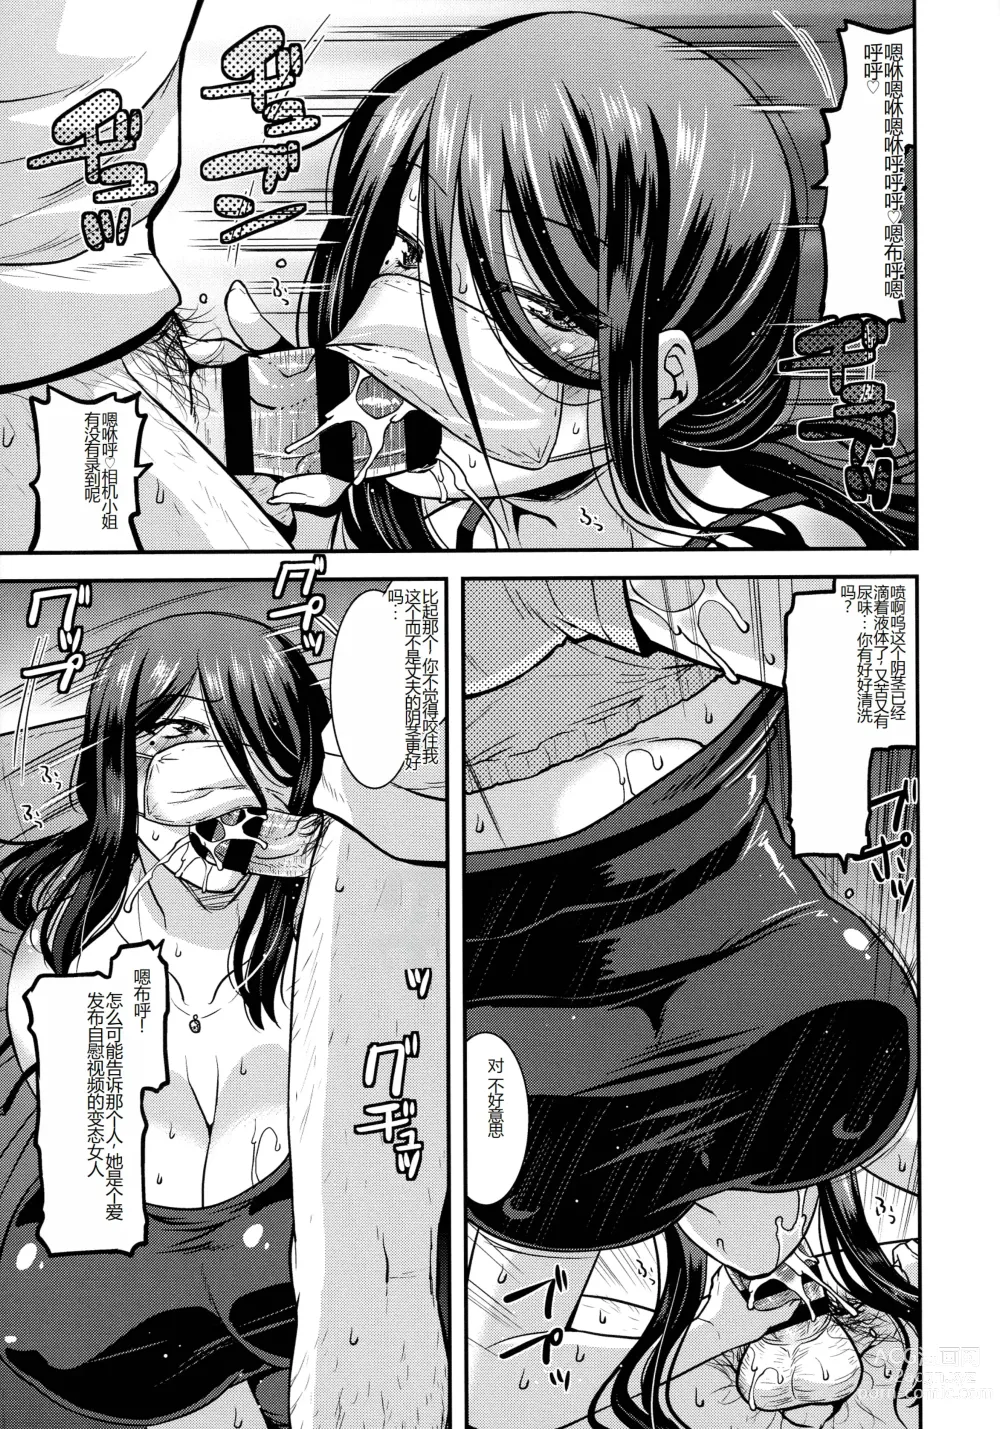 Page 29 of manga Kobibiyori no Midarazuma